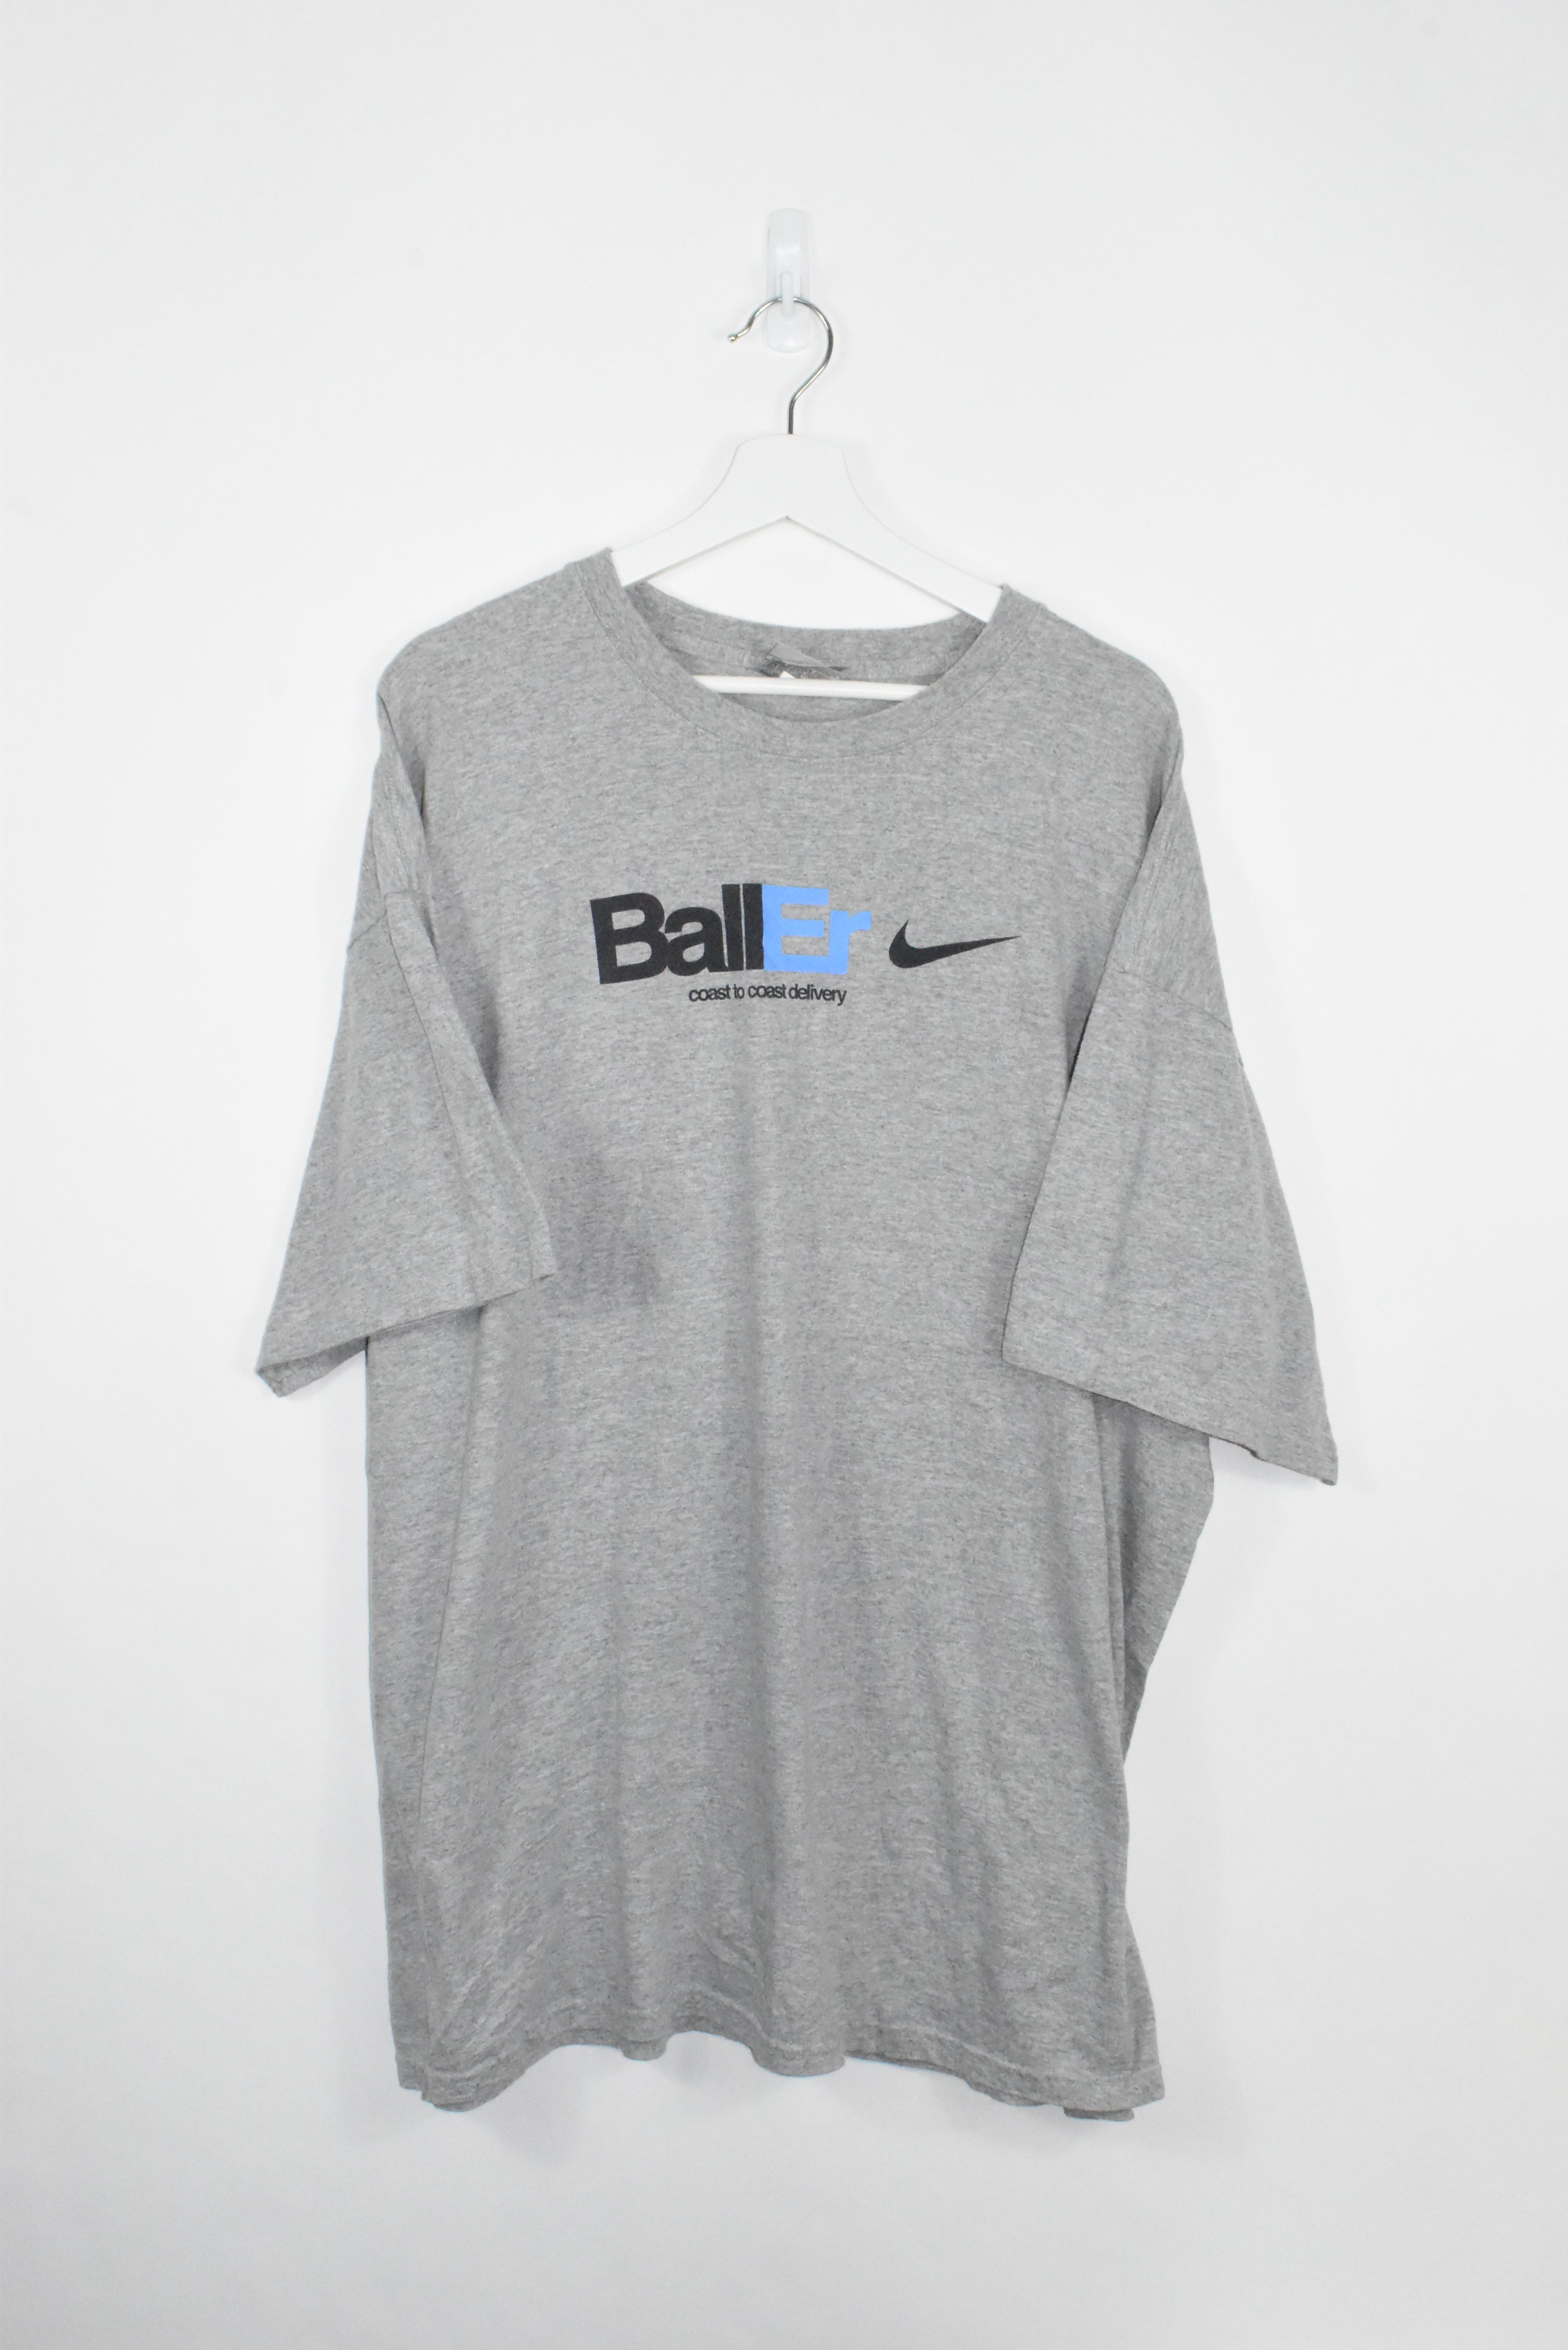 Vintage Nike Baller Tee XXL